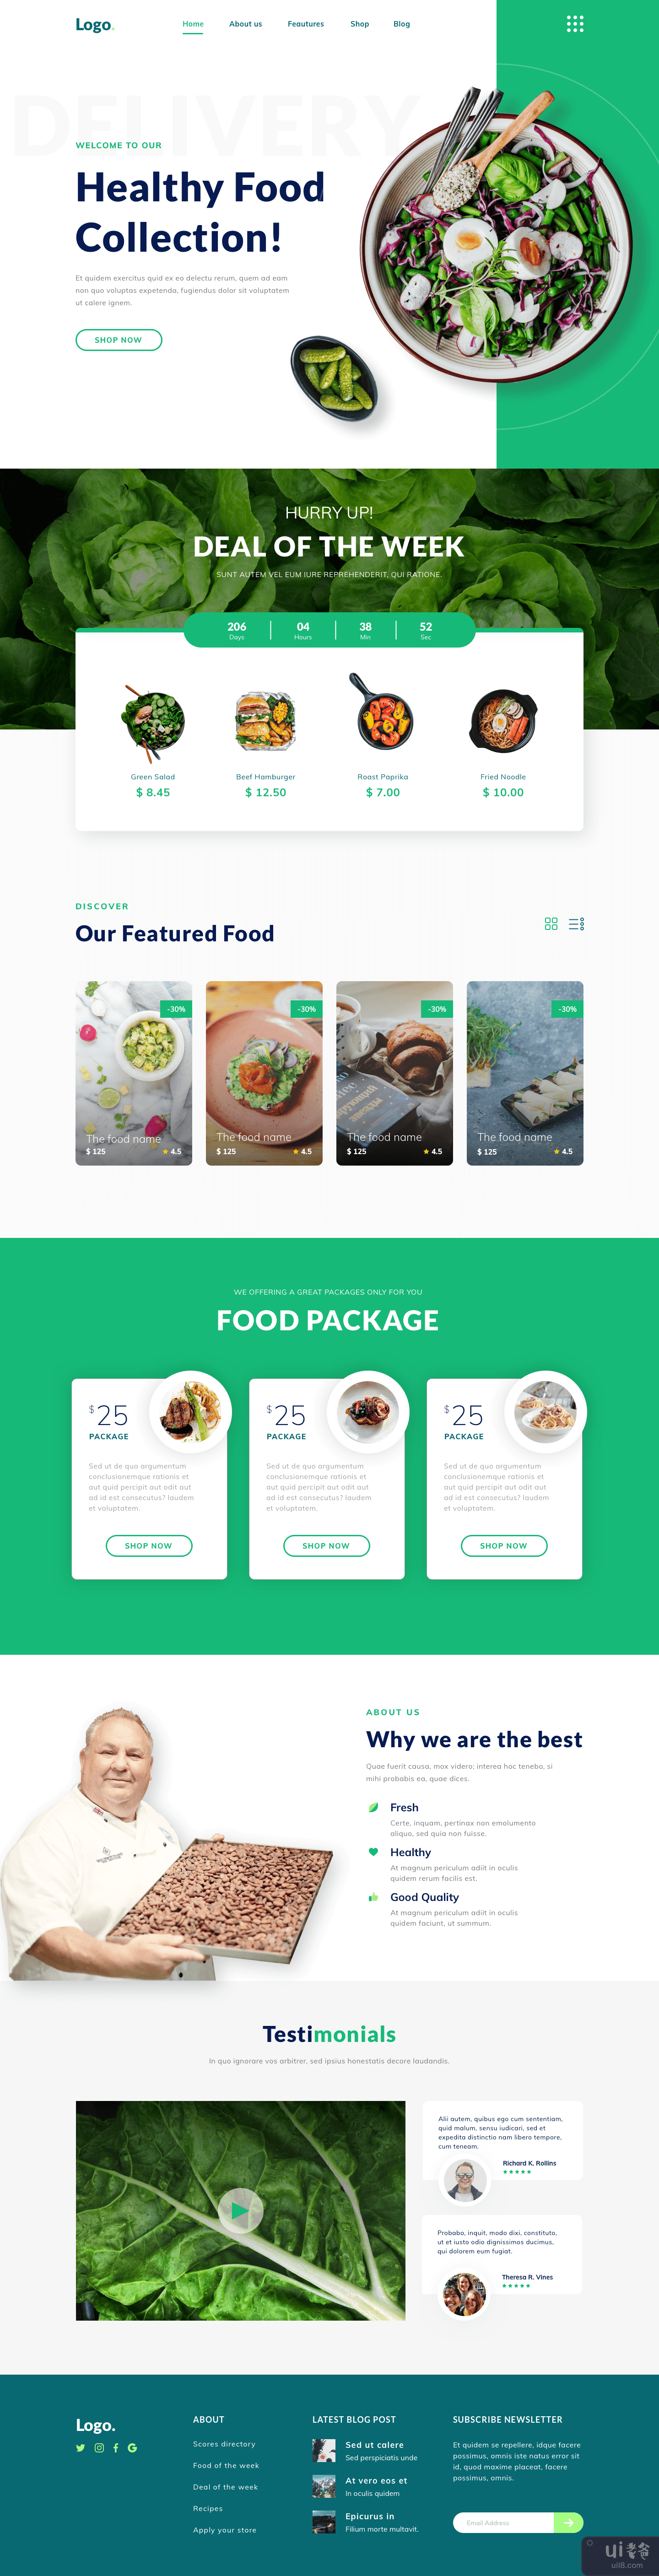 健康食品登陆页面模板(Healthy food landing page template)插图